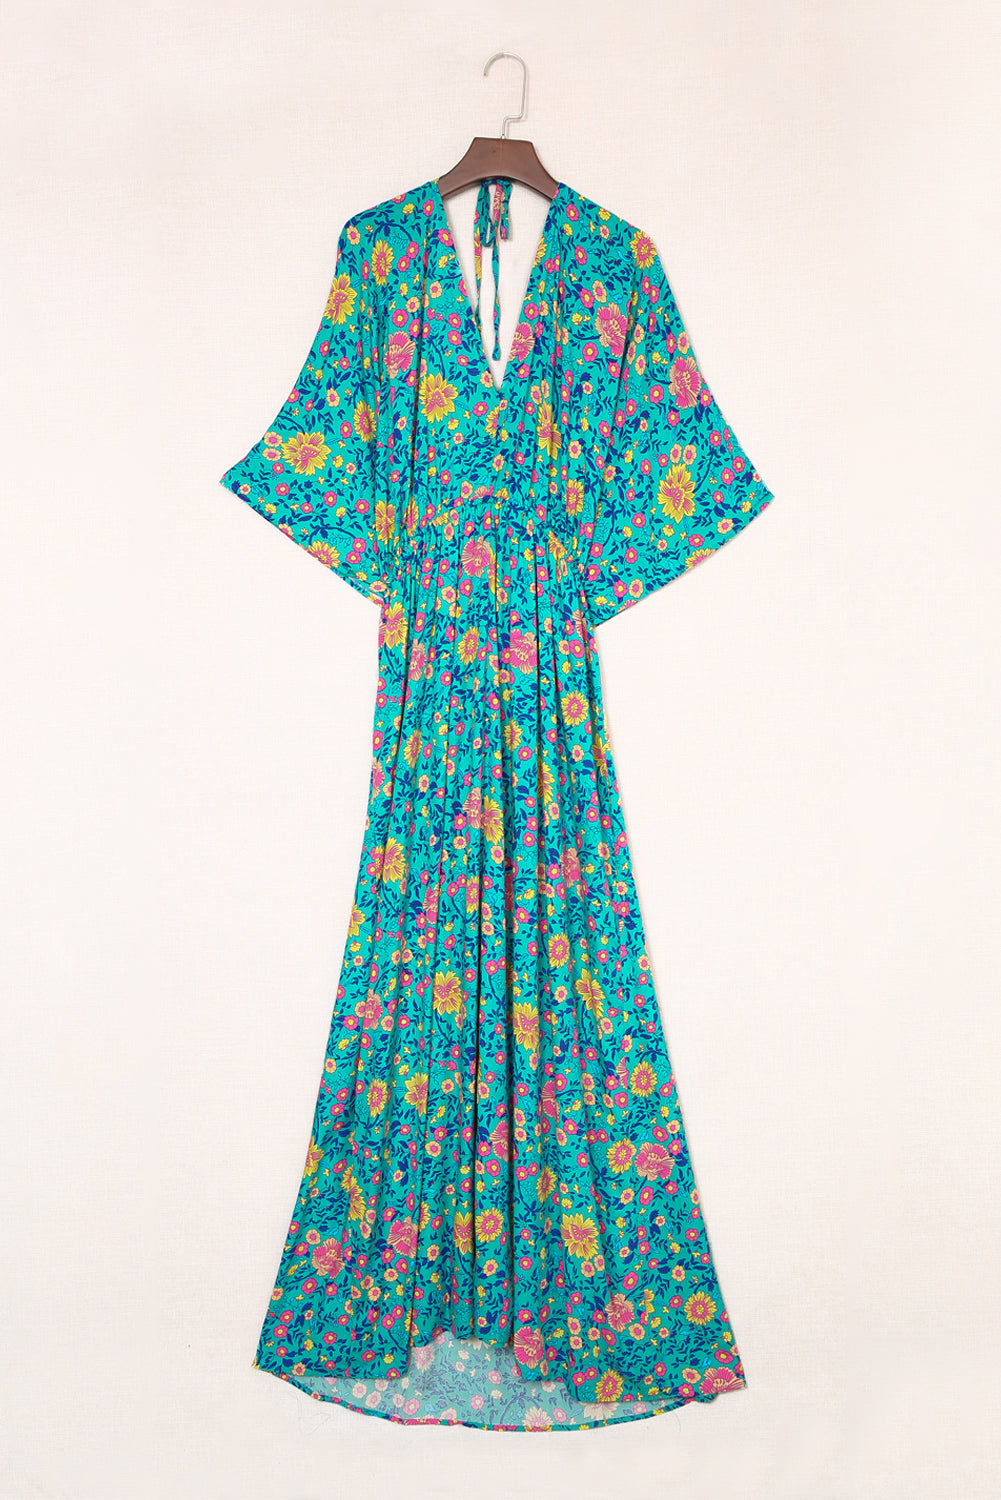 Green Boho Deep V Neck Floral Maxi Dress Floral Dresses JT's Designer Fashion